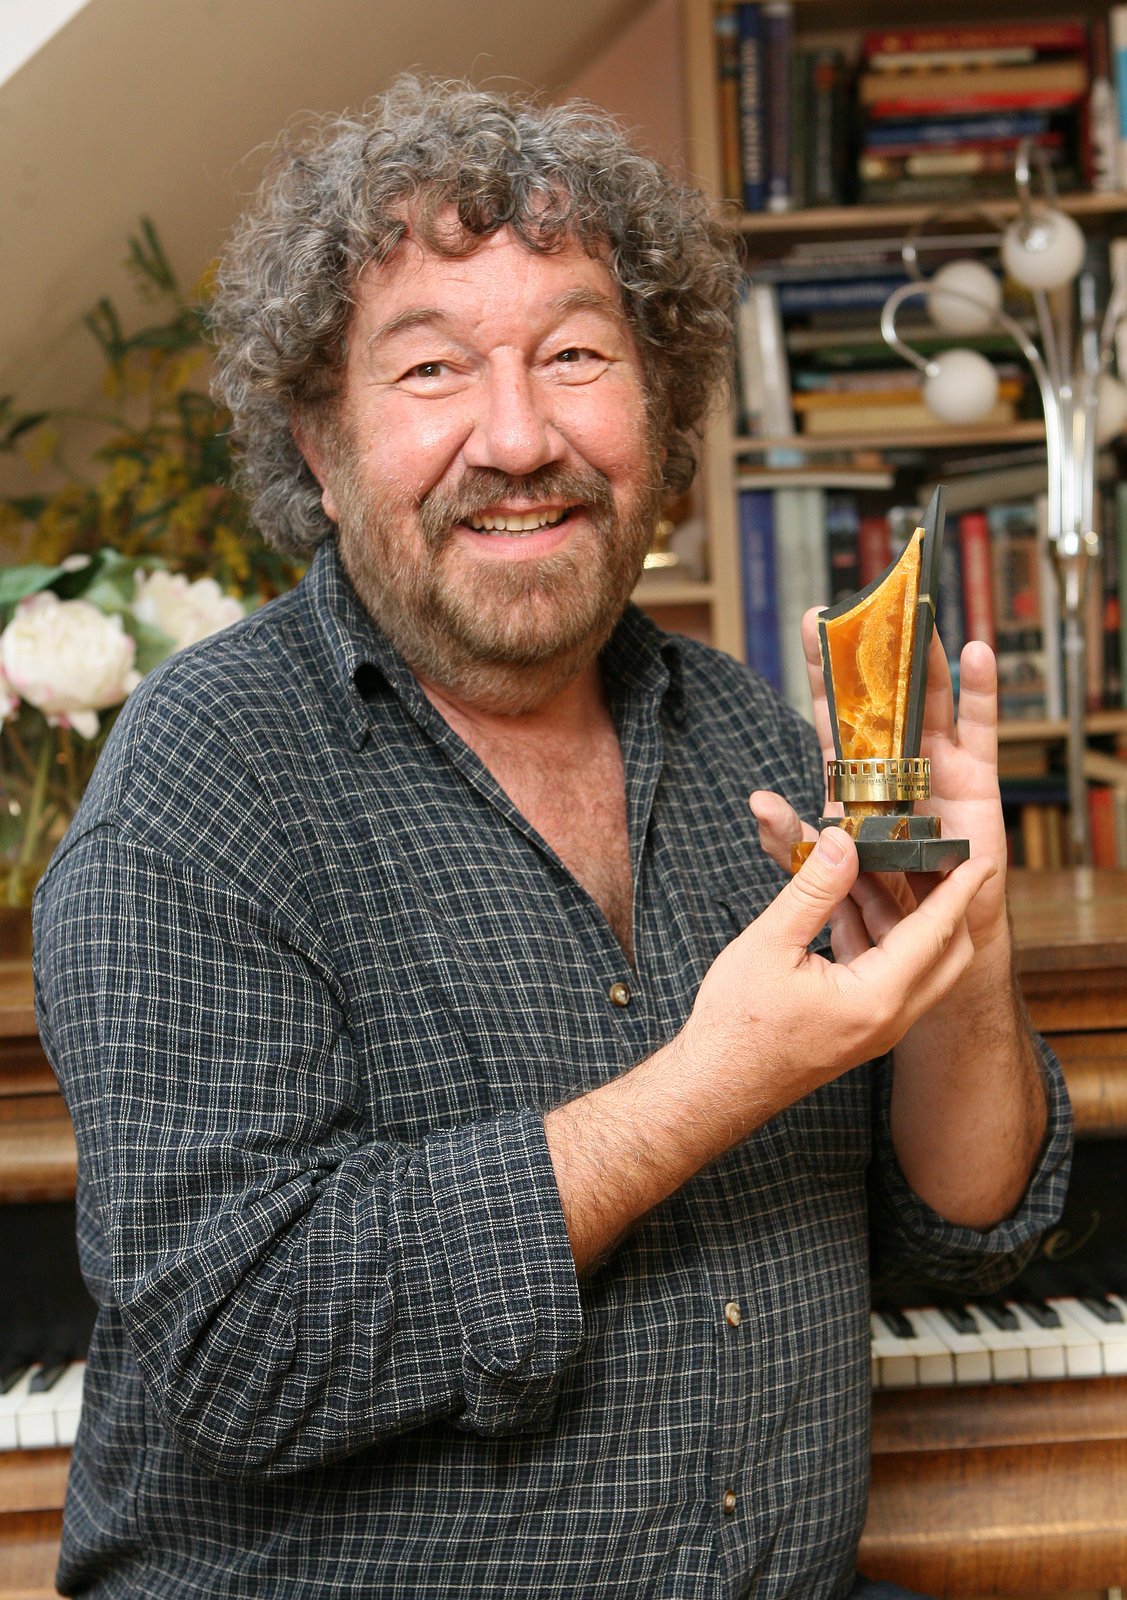 V srpnu 2011 v Uljanovsku (Rusko) dostal Zdeněk zvláštní Ocenění za rytířství, kterým vrátil dětem i společnosti krásu pohádky.